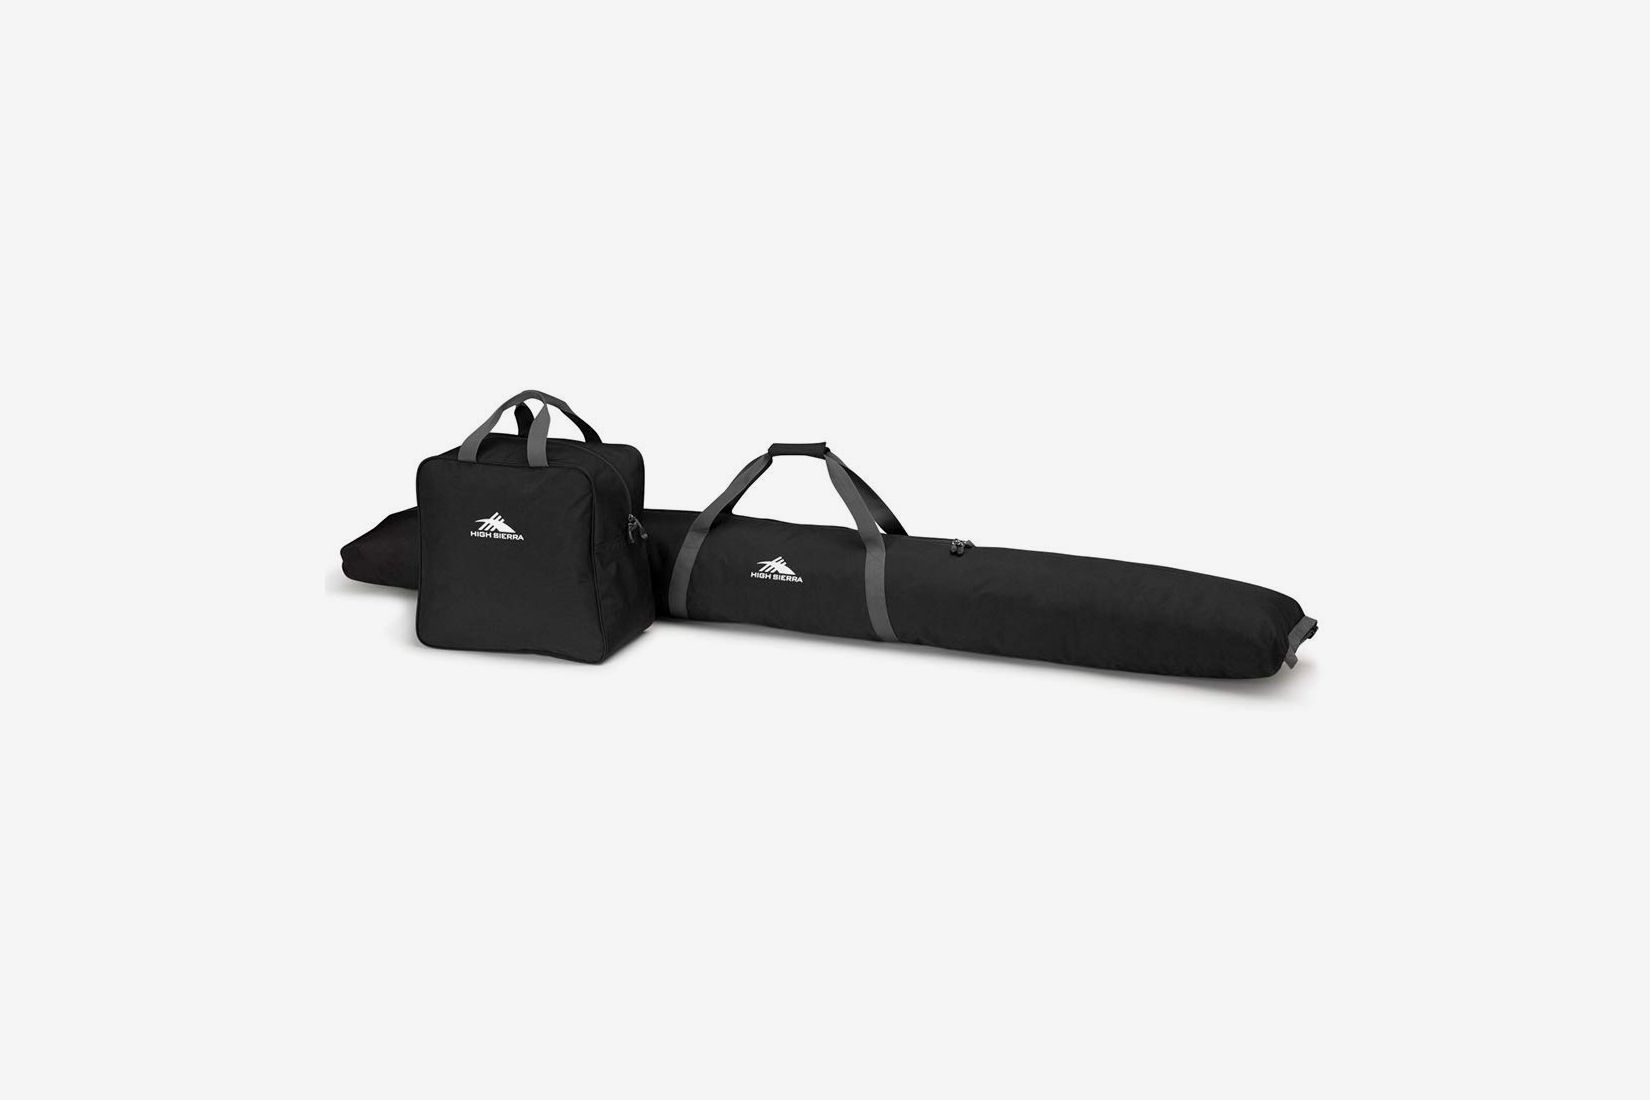 Ski Bag Black Orange 170 or 190 cm Length BRUBAKER 'Champion' Combo Boot Bag 